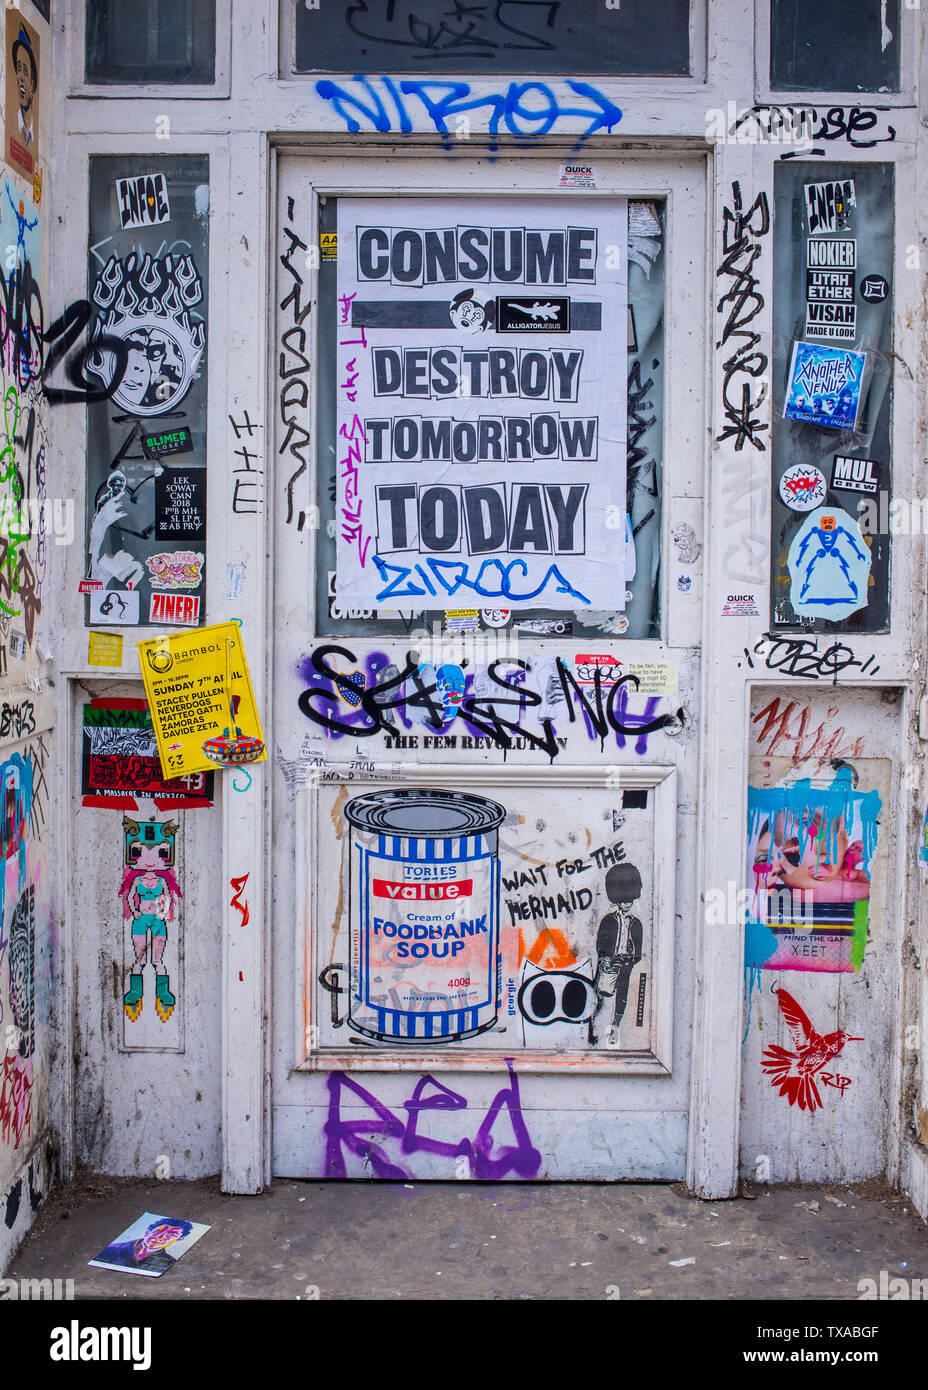 Couverts de graffitis et de porte autocollants avec poster à partir d'une campagne environnementale disant consommer détruire demain aujourd'hui à Shoreditch, London Banque D'Images